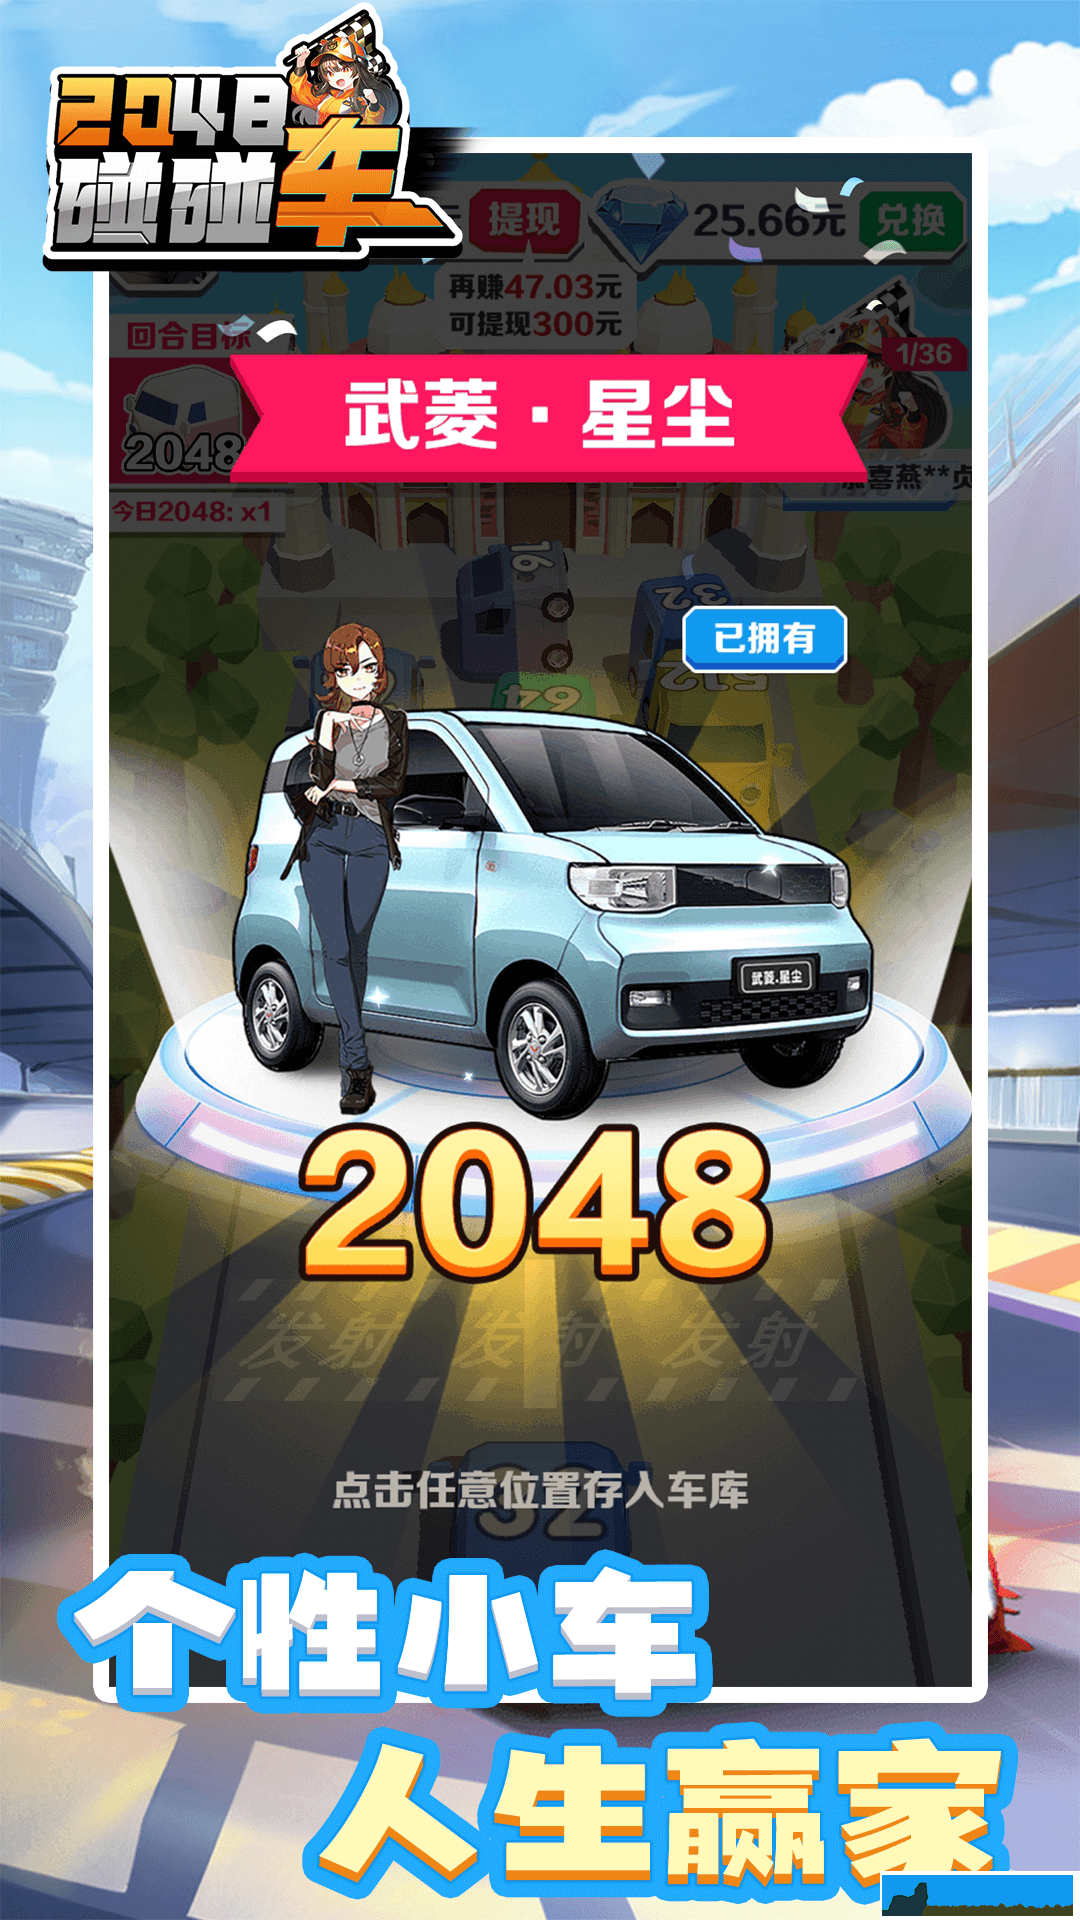 2048碰碰车游戏红包版正版 v1.0.1